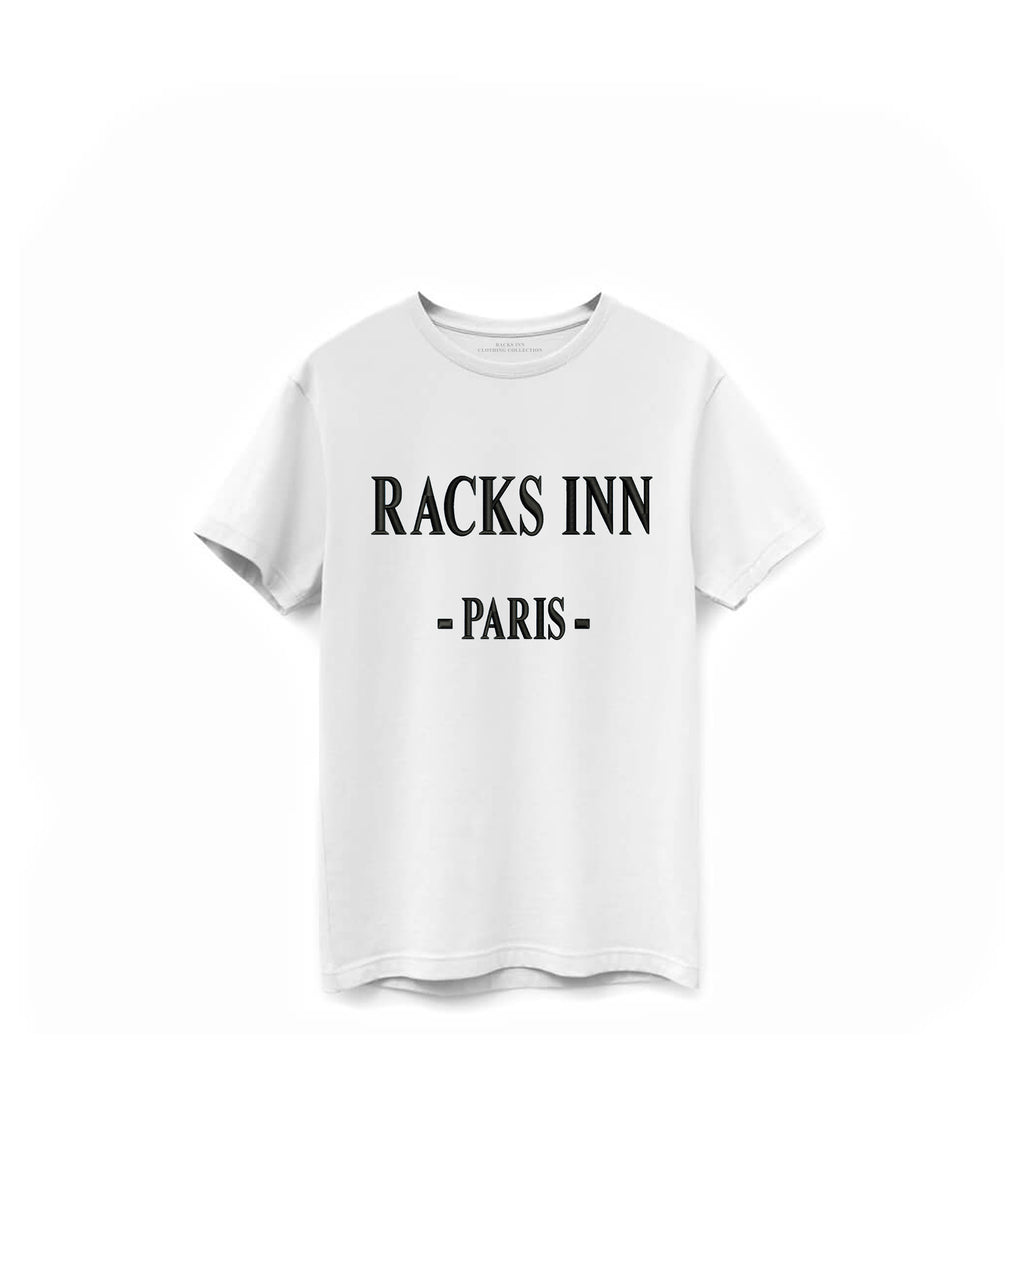 Signature Paris T-Shirt - White